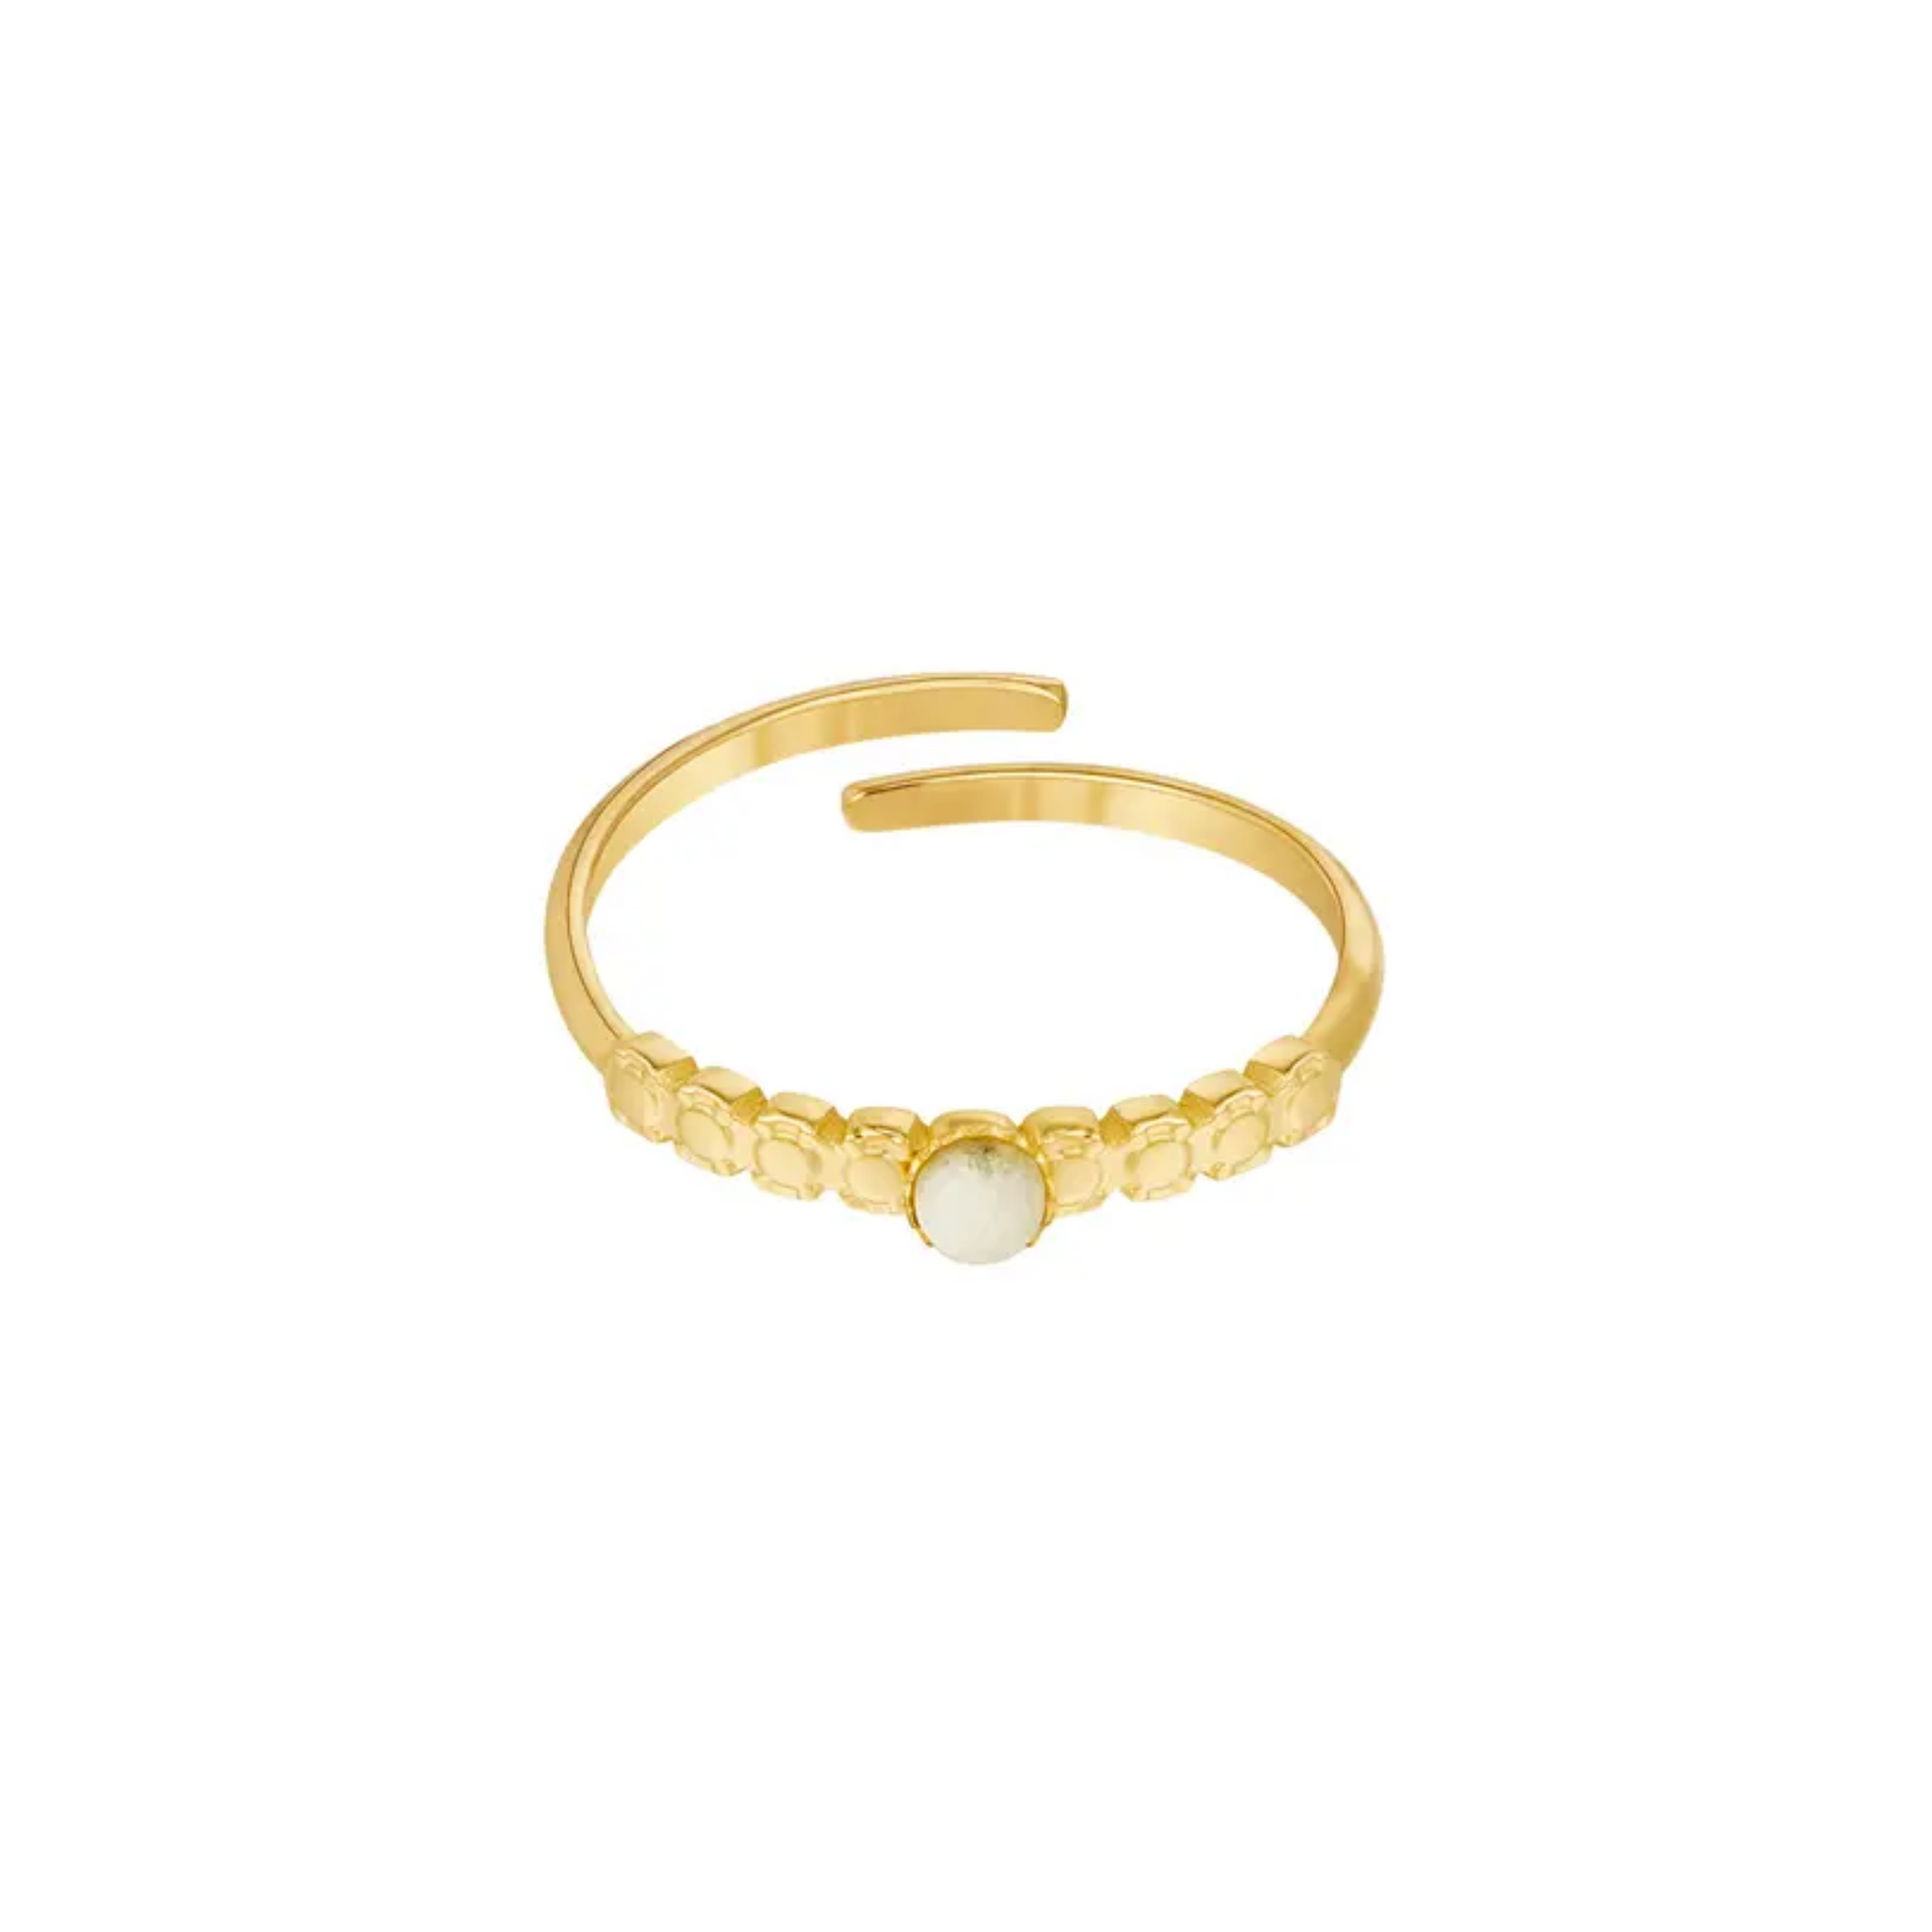 Yehwang | Ring Noelle van goudkleurig stainless steel met wit steentje | Conceptstore Sisalla